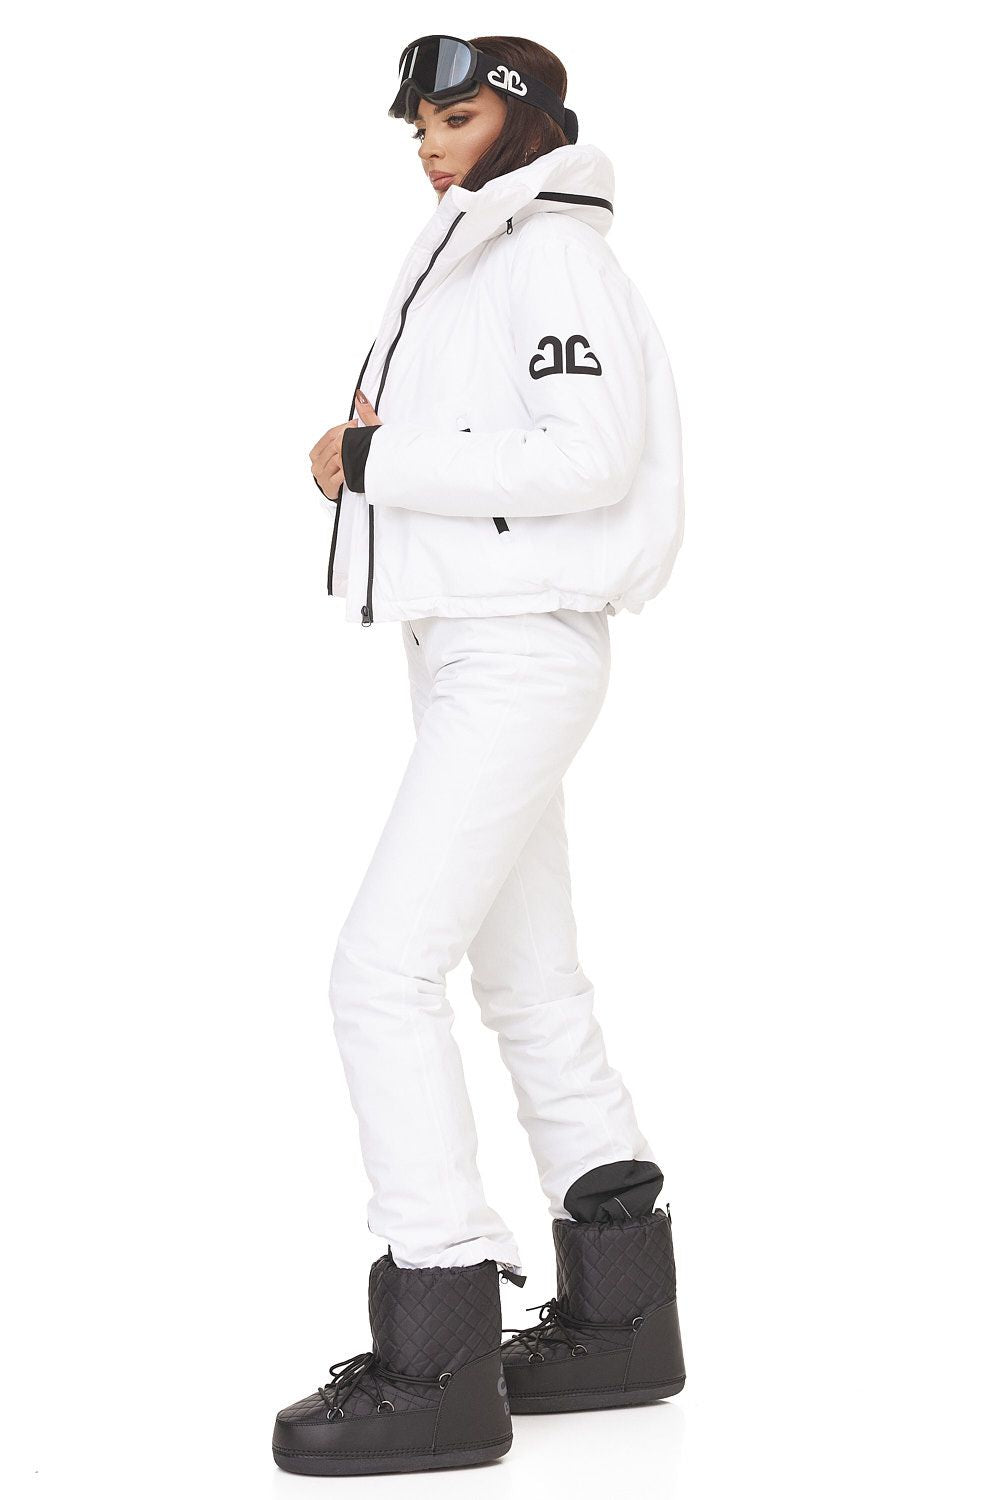 Reasia Bogas white casual ski suit